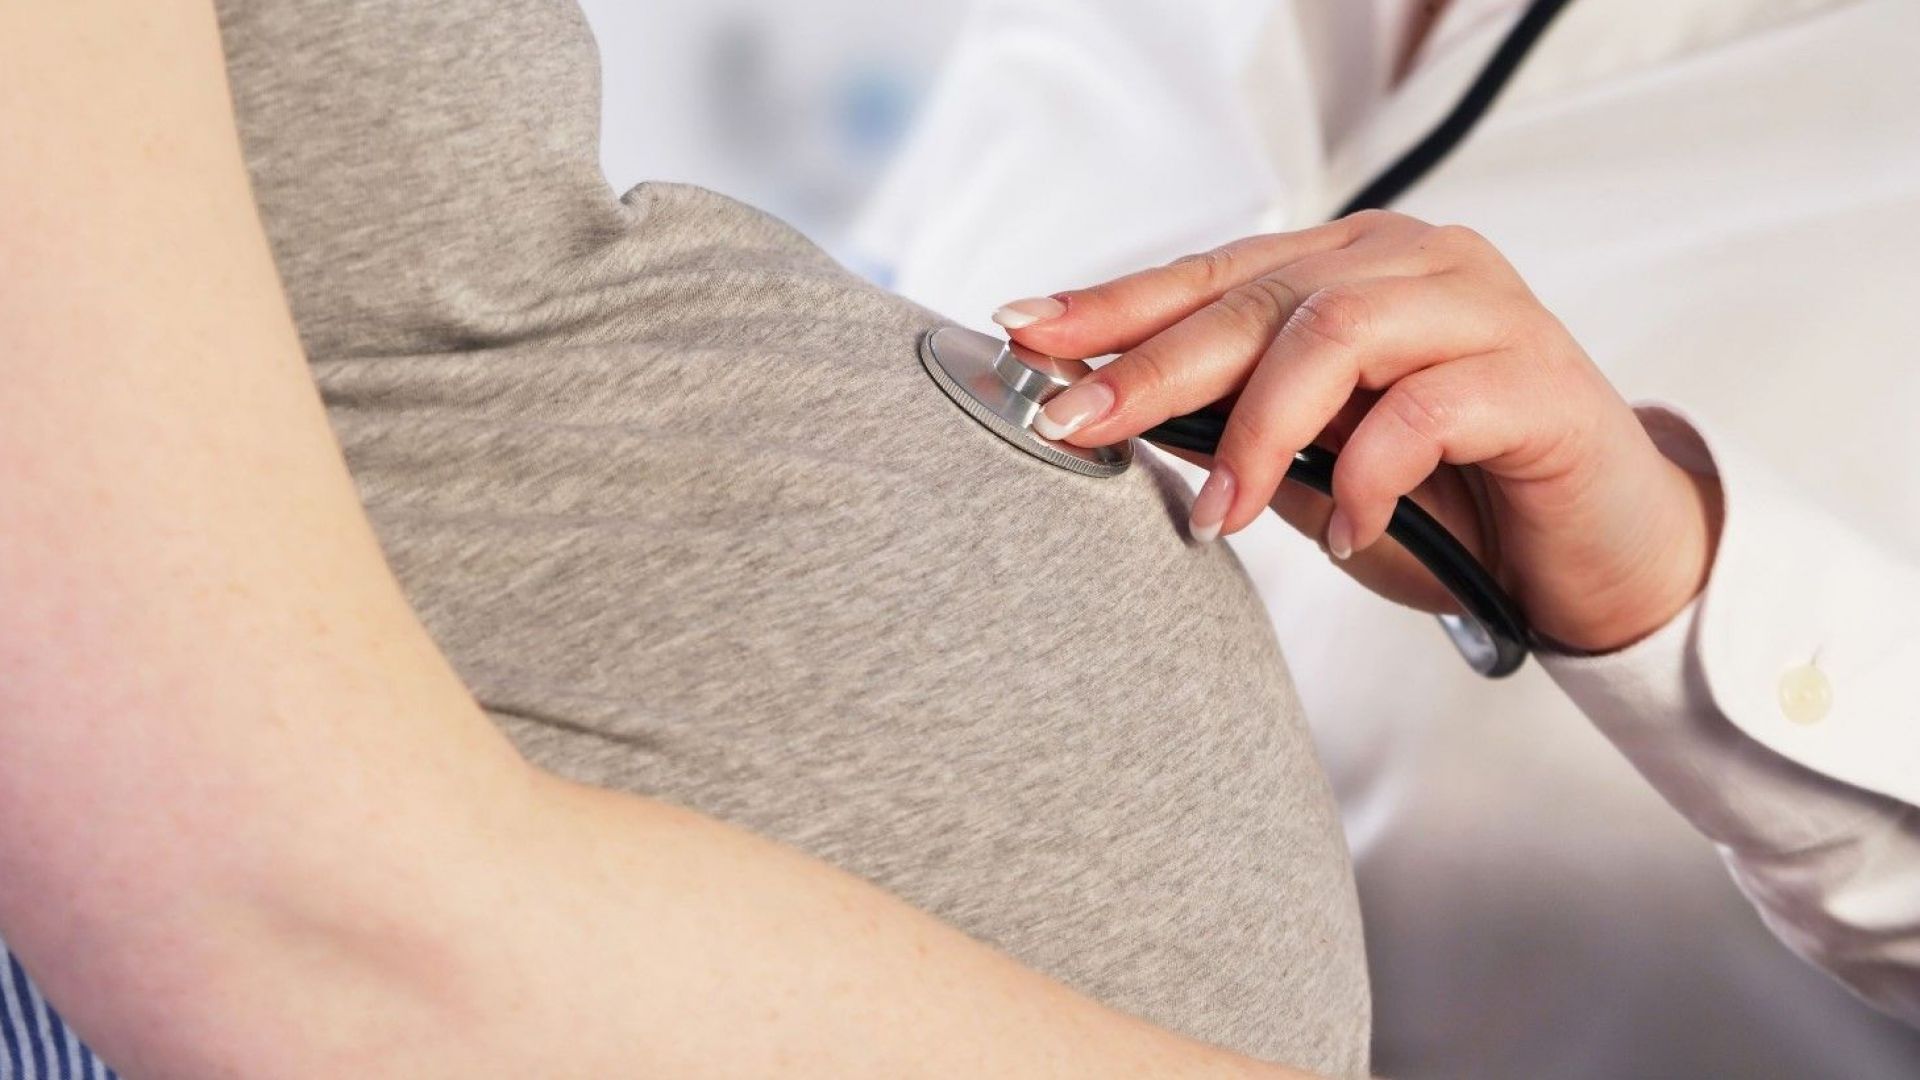 Няма пречка бременни да бъдат имунизирани срещу Covid-19, след преценка от лекар